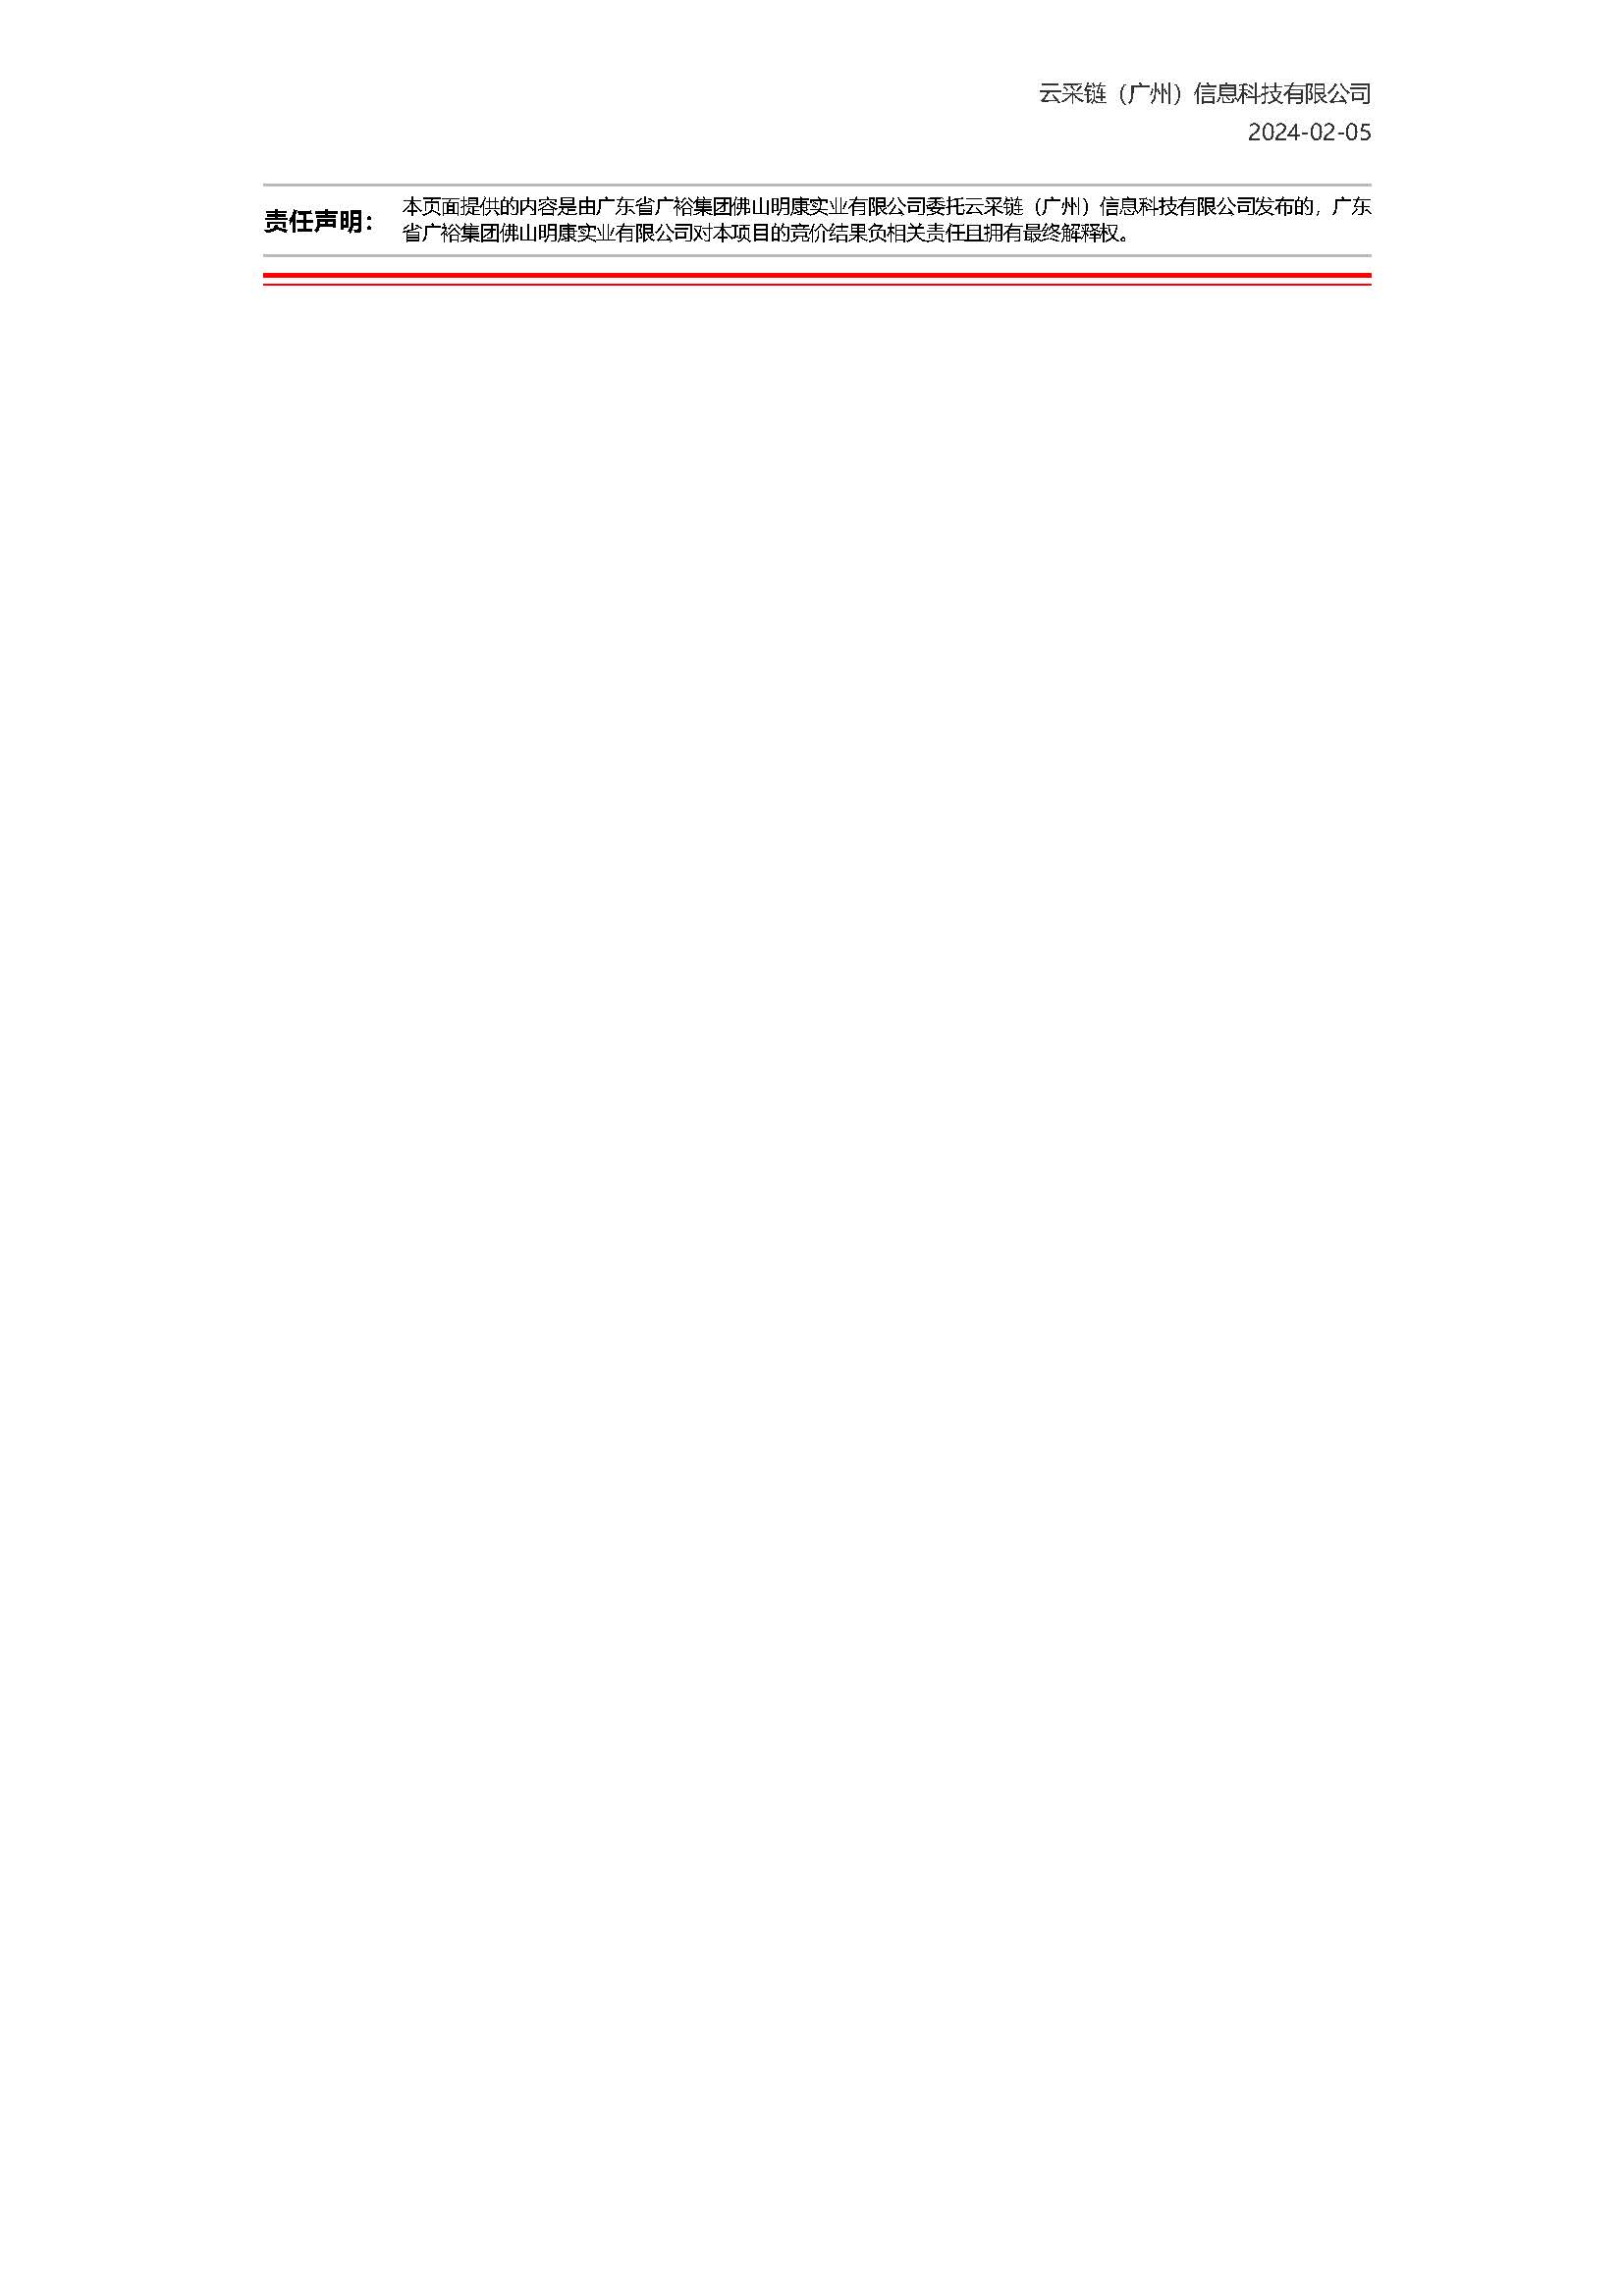 14.31广东省广裕集团佛山明康实业有限公司C、D组团一楼车间隔离幕墙材料采购项目结果公告_页面_2.jpg